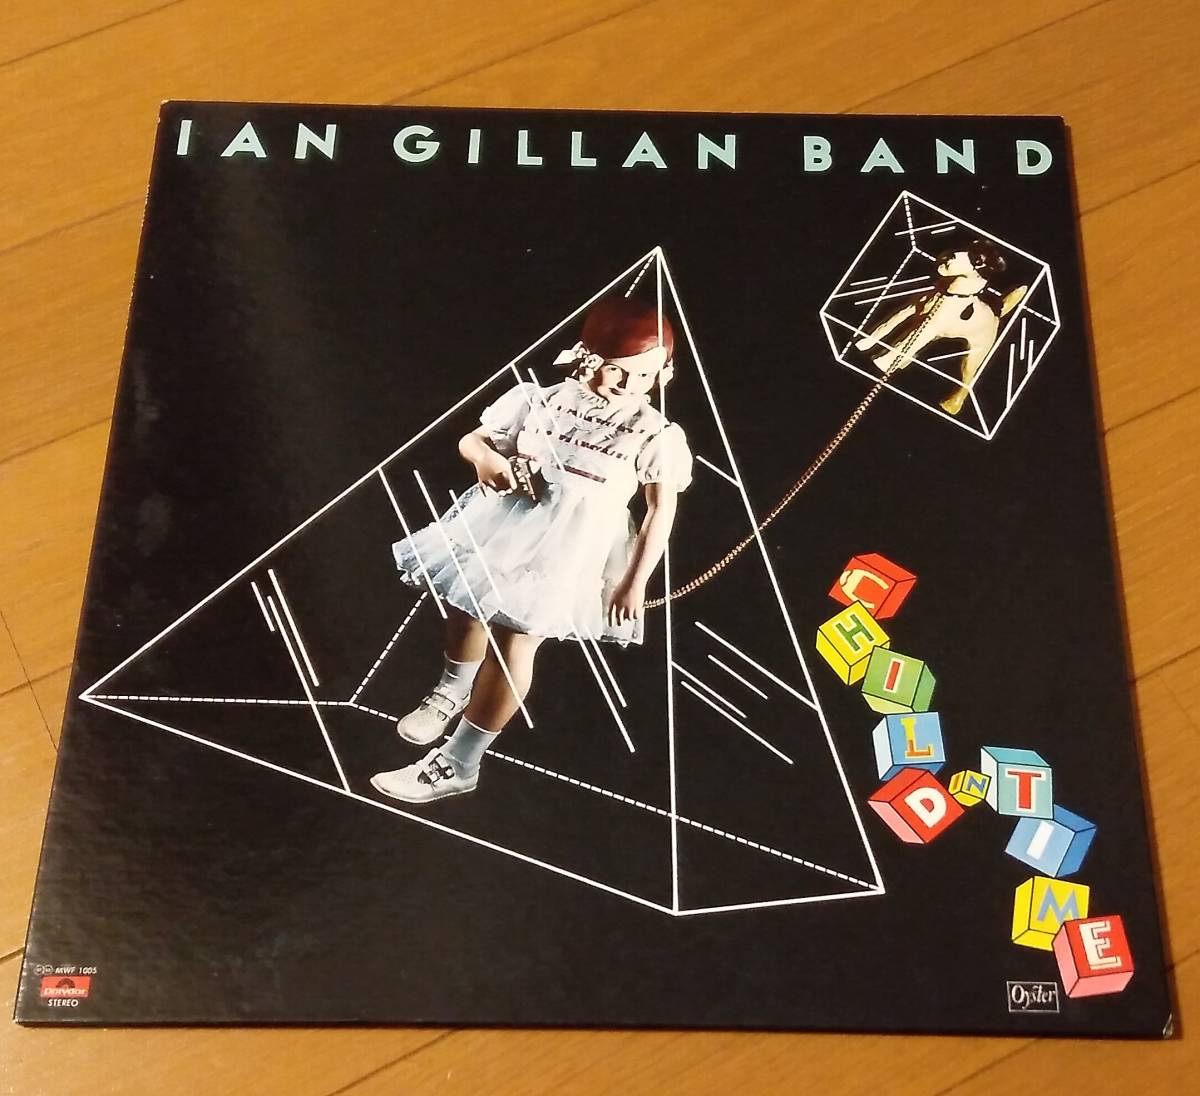 LP イアン ギラン バンド IAN GILLAN BAND チャイルド イン タイム オイスターレコード MWF-1005